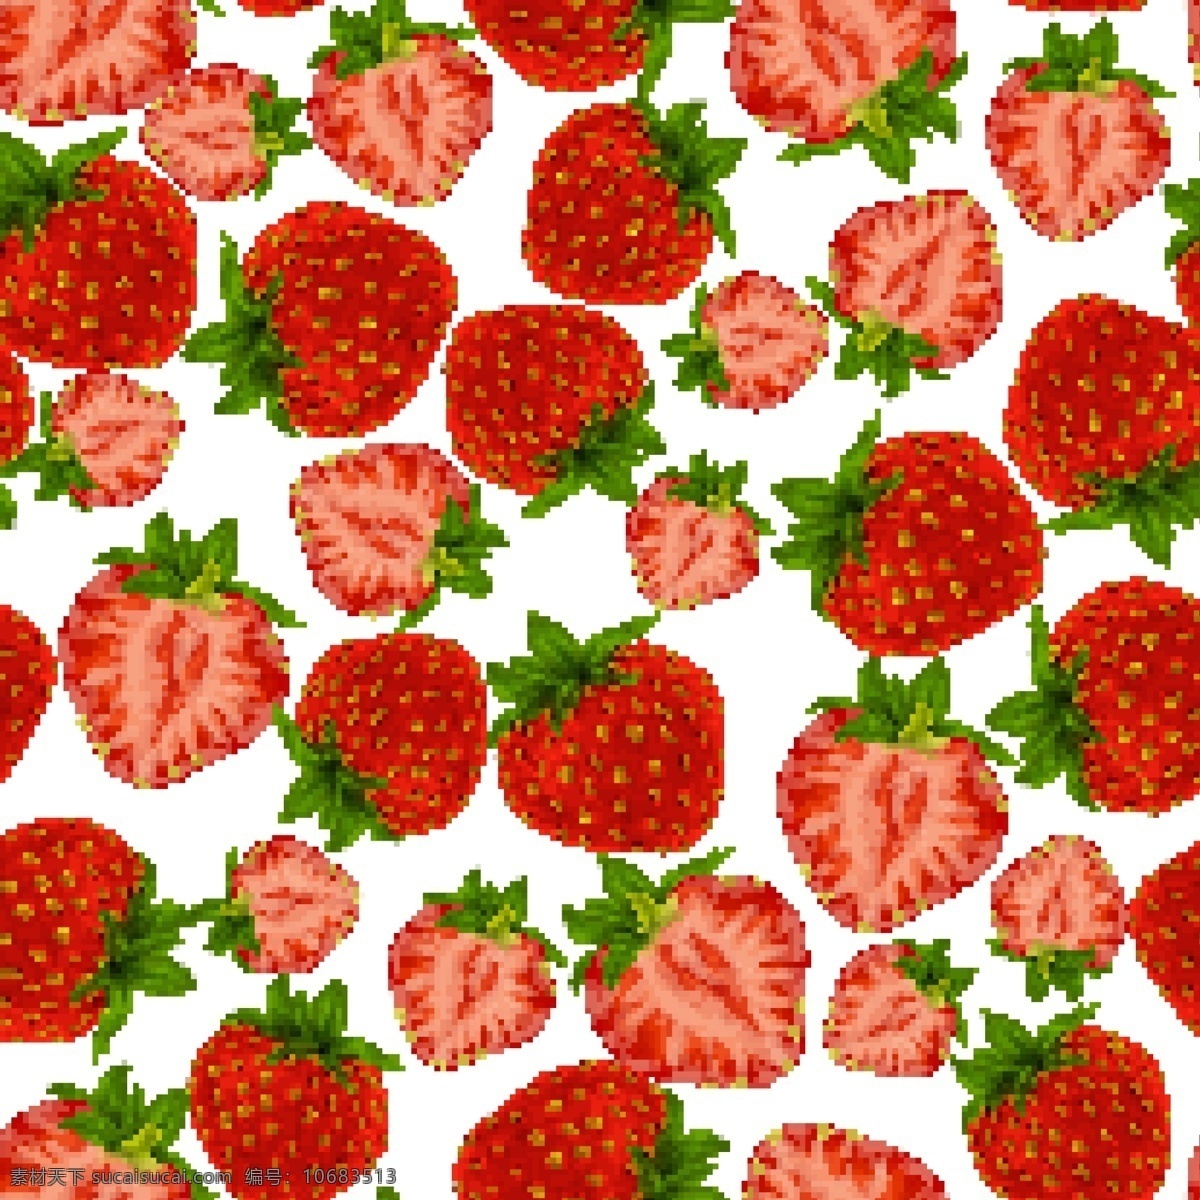 红色 草莓 无缝 背景 矢量 水果 无缝背景 切片 矢量图